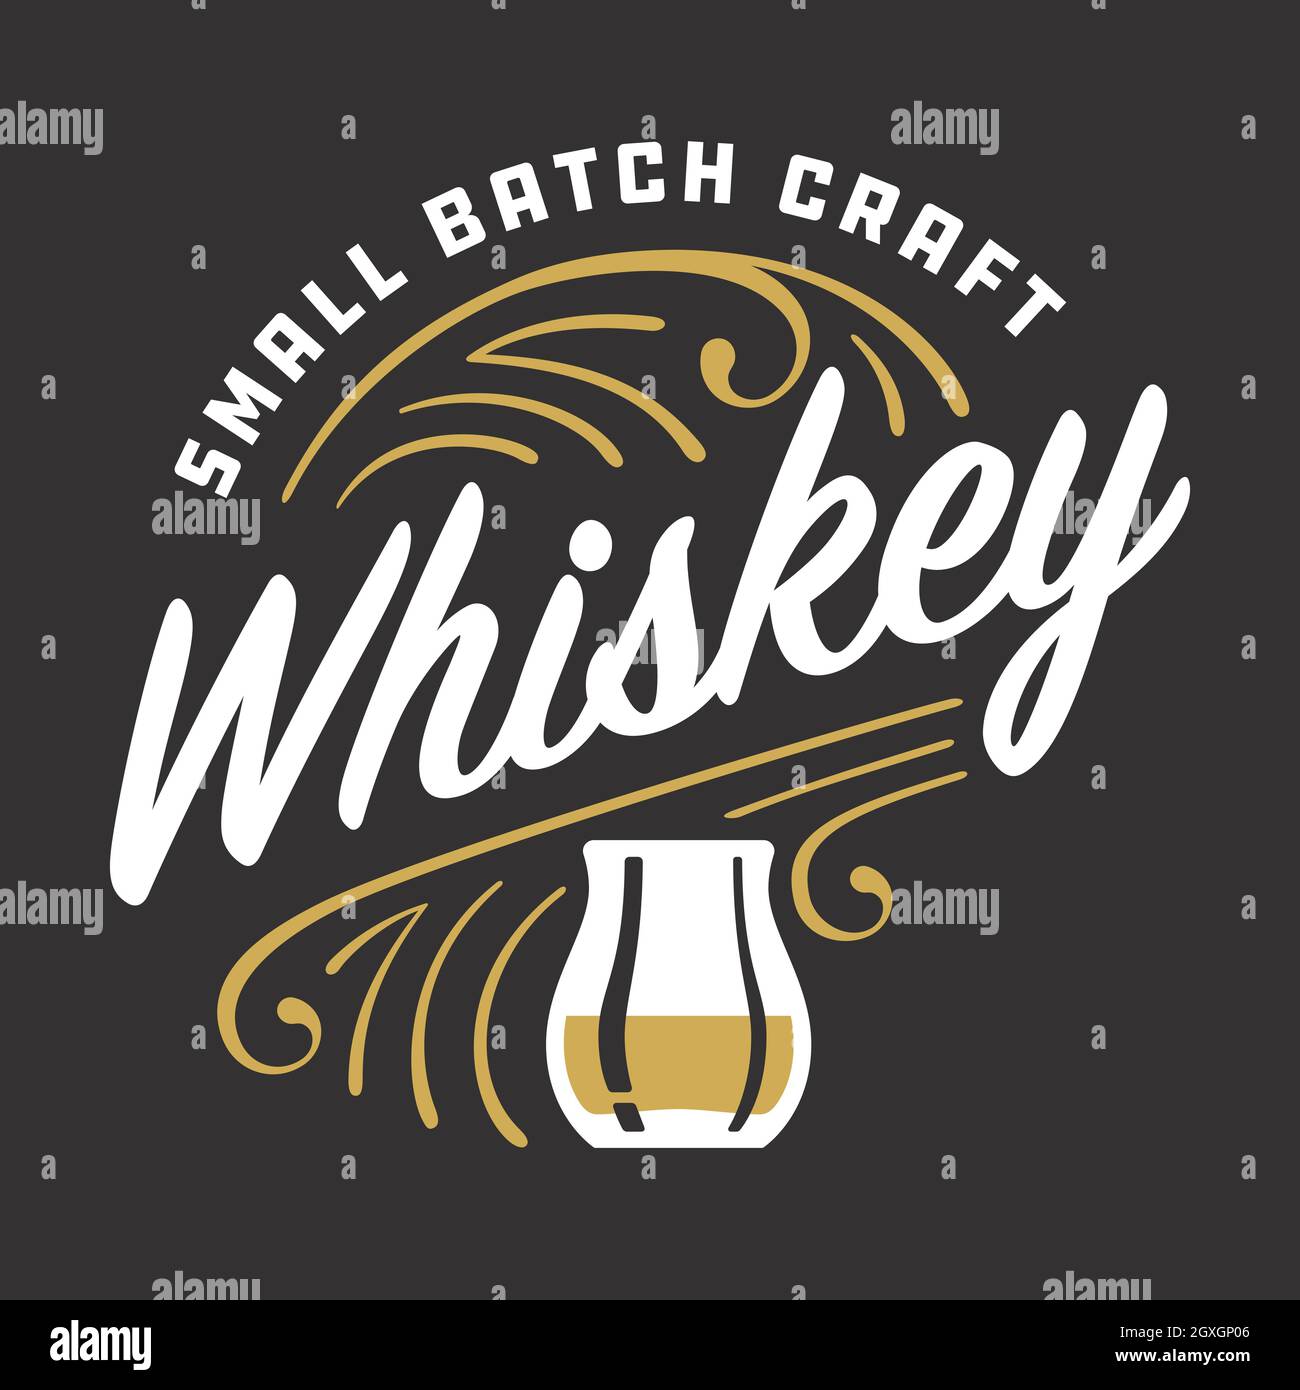 Piccola scritta personalizzata di Whiskey Batch Craft con dettagli di pinstripe. Illustrazione vettoriale della scritta che celebra la tendenza della distillazione artigianale. Illustrazione Vettoriale